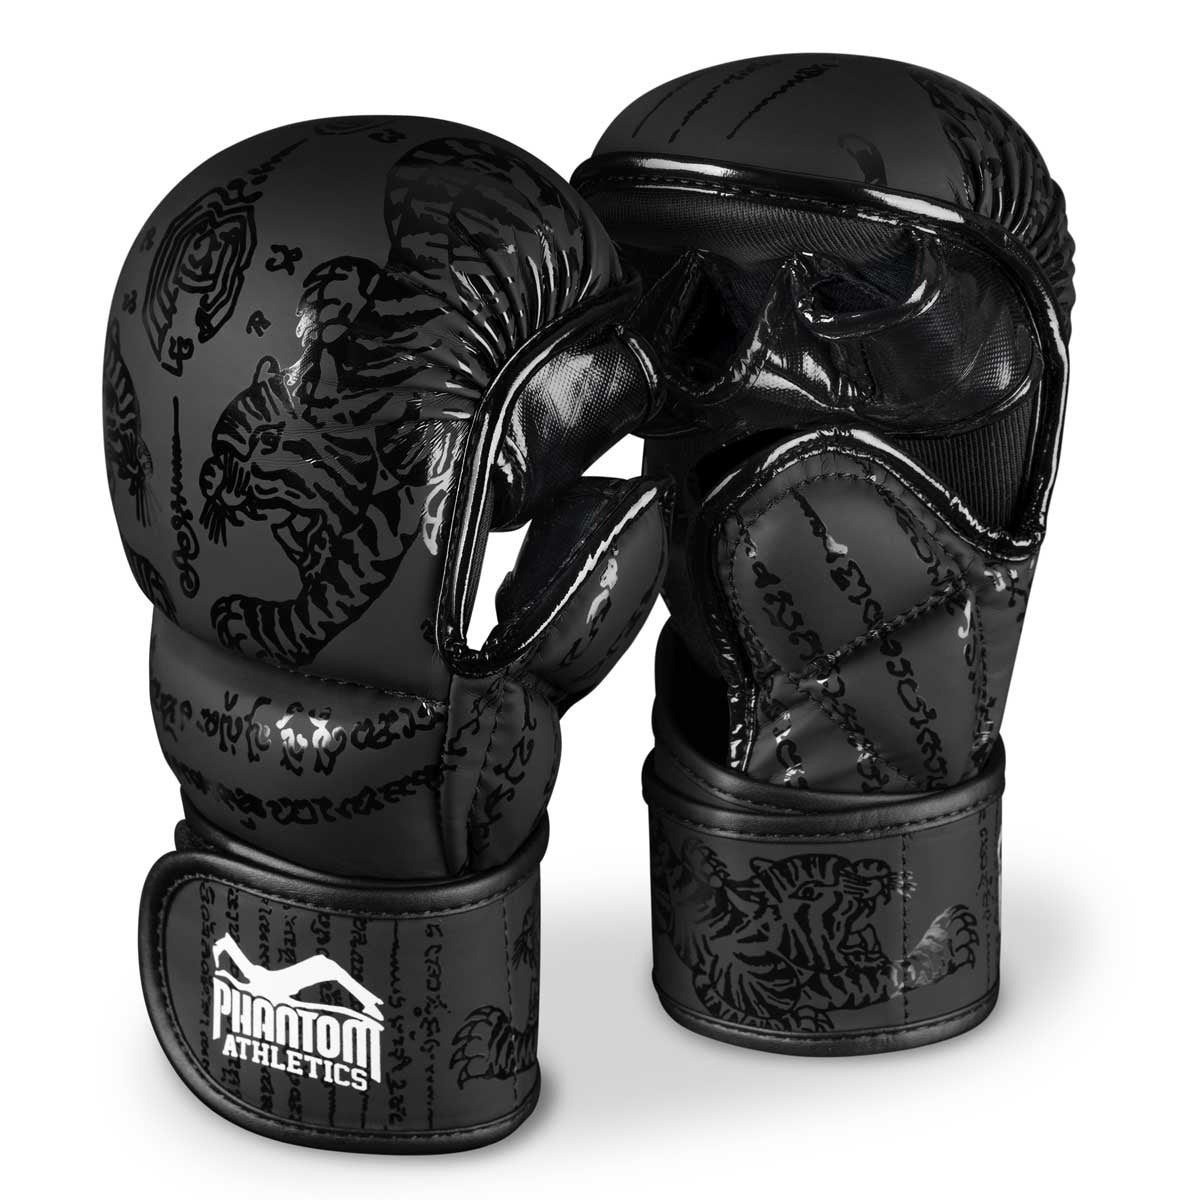 Kampfsport Starter Set von Phantom. Muay Thai MMA Handschuhe, Muay Thai Schienbeinschoner und Muay Thai Kopfschutz. Alles was du für dein Thaiboxen brauchst im günstigen Setpreis.